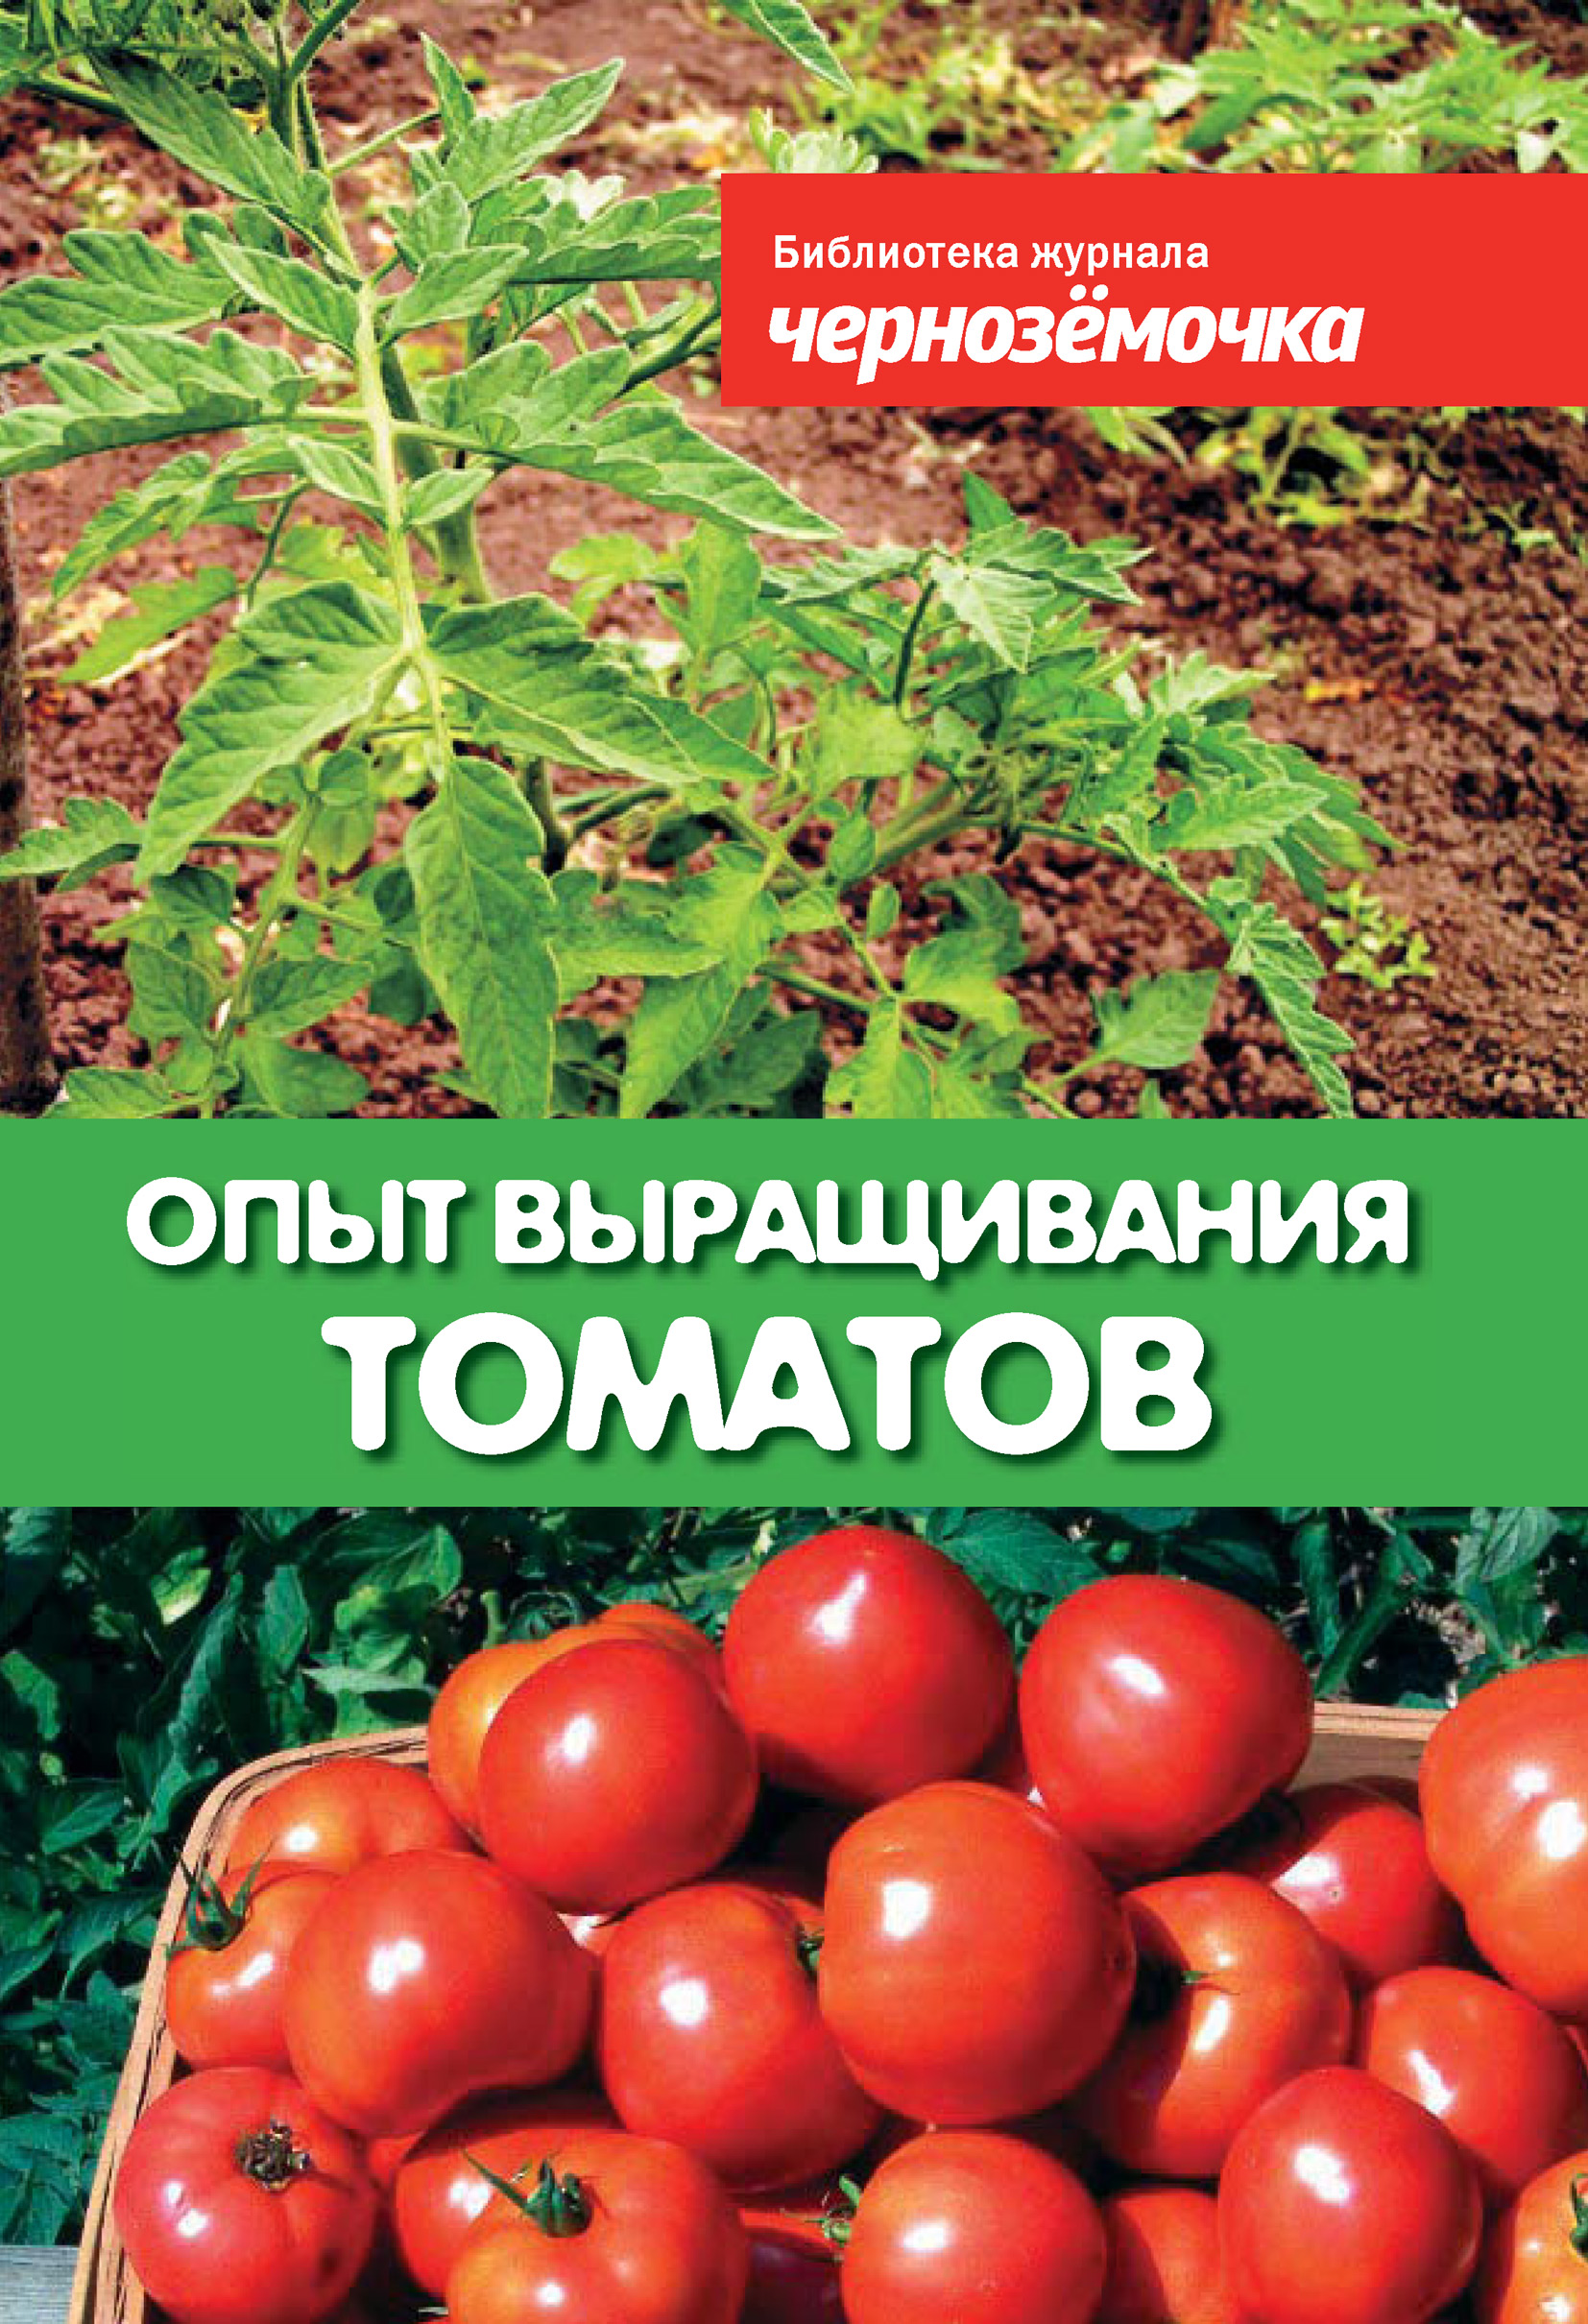 Книга Опыт выращивания томатов из серии Библиотека журнала 